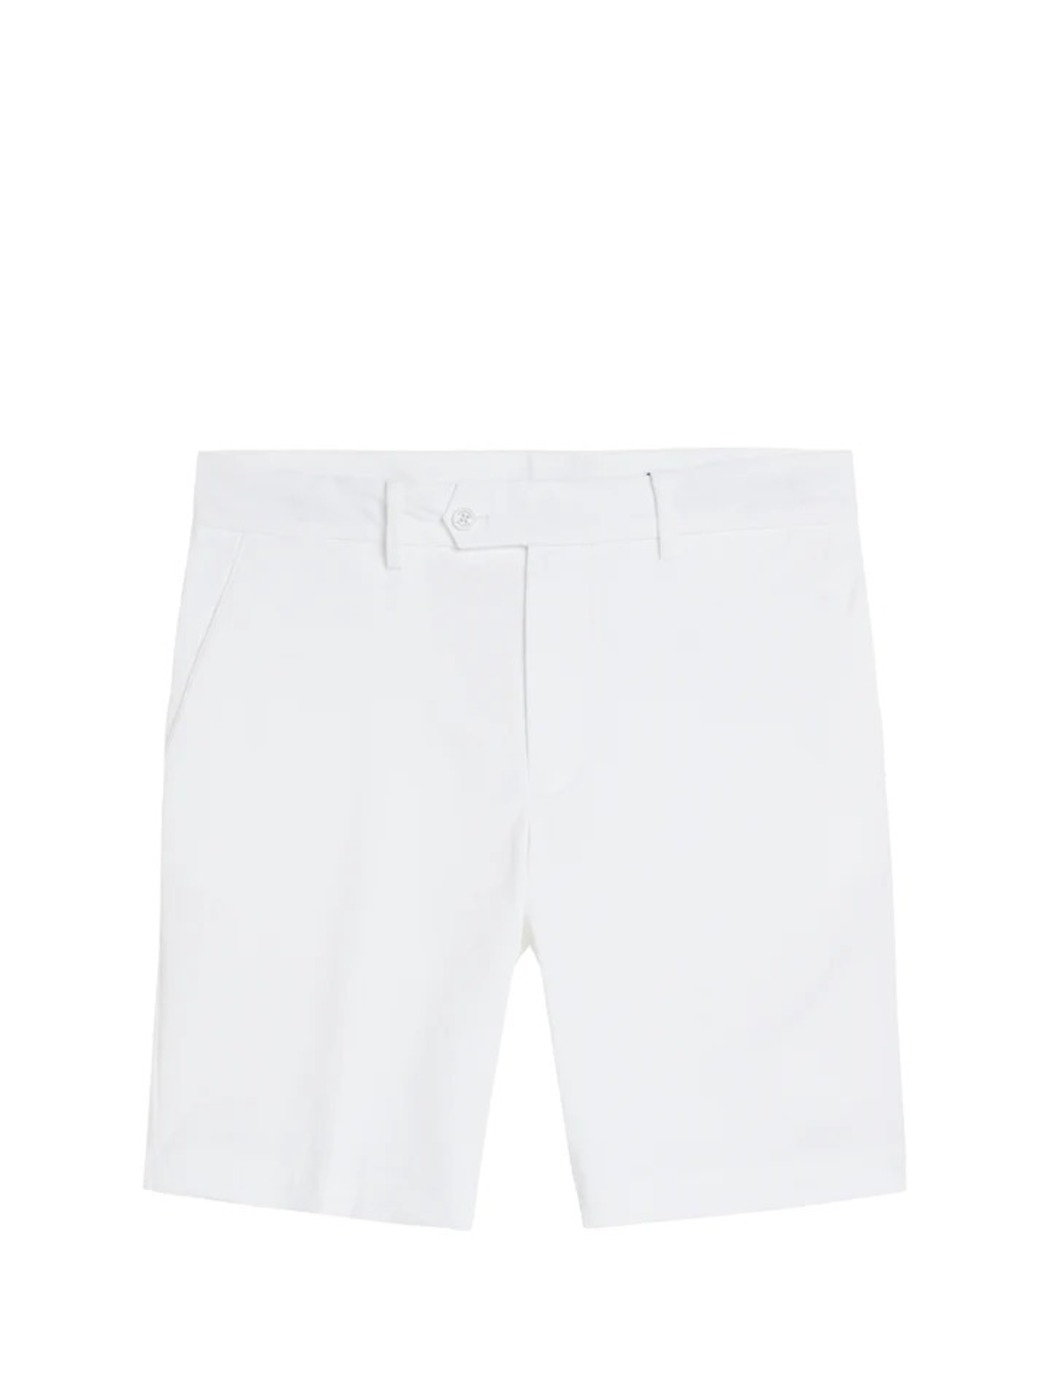 Jaylindberg SS23 Men&#039;s Golf Shorts Vent (White)